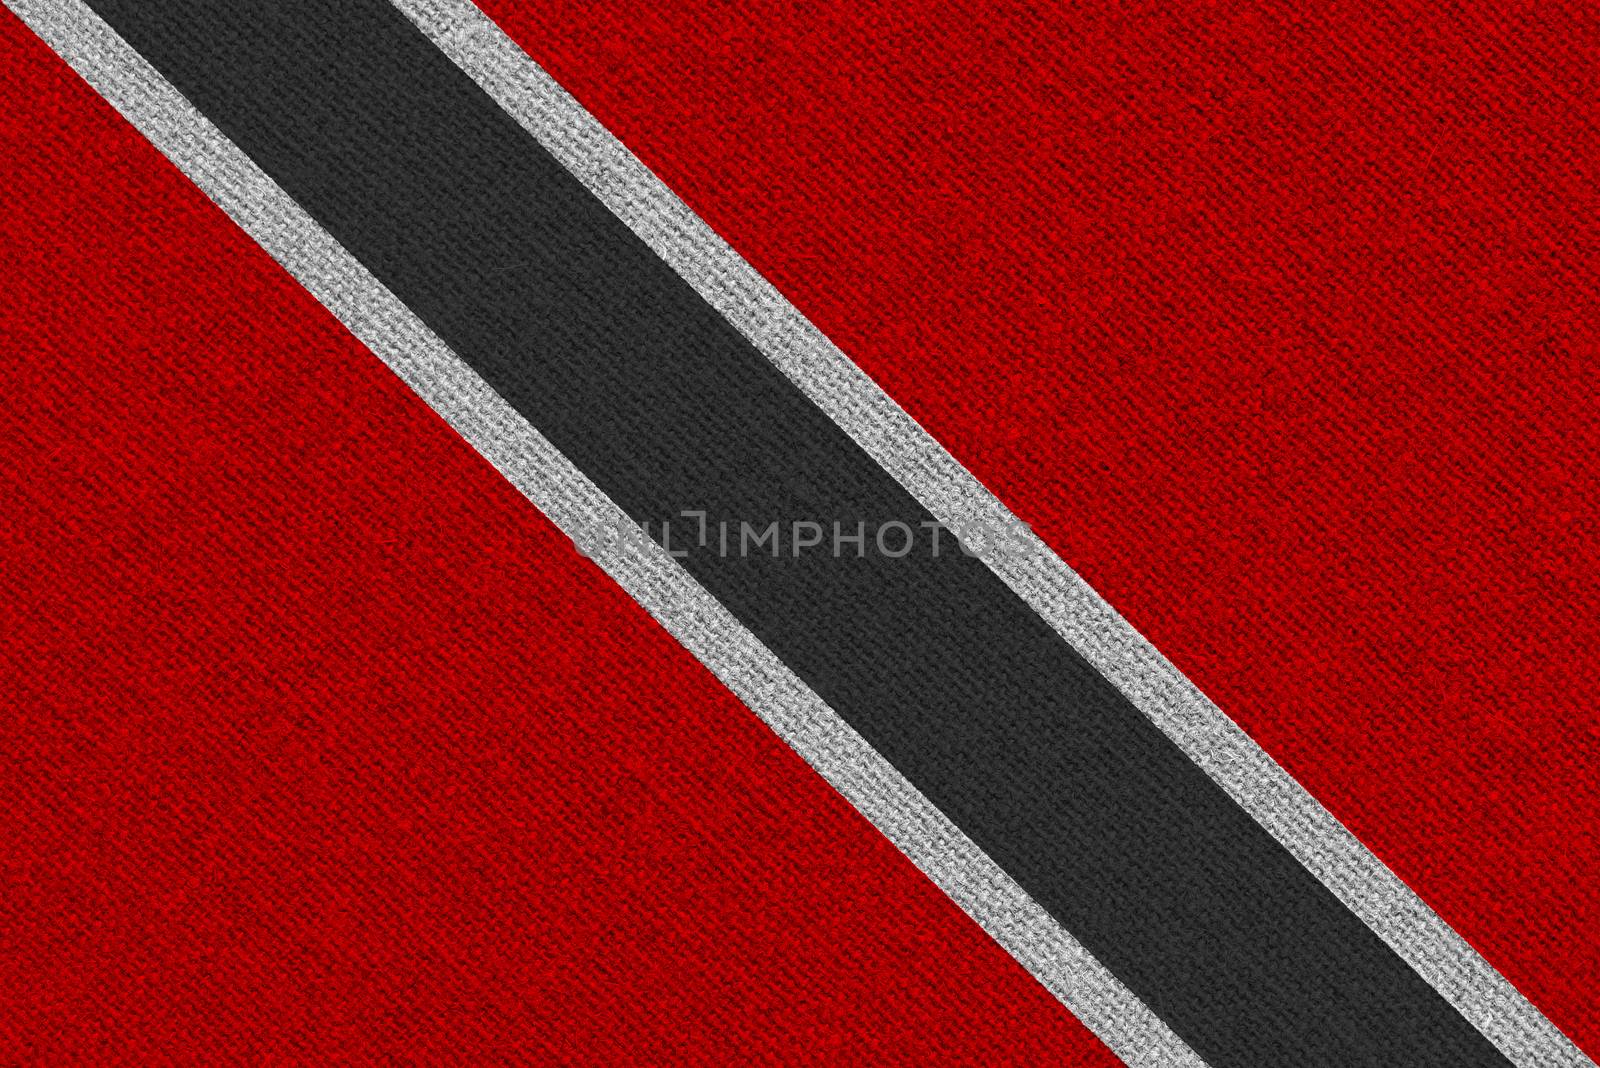 Trinidad and Tobago fabric flag. Patriotic background. National flag of Trinidad and Tobago